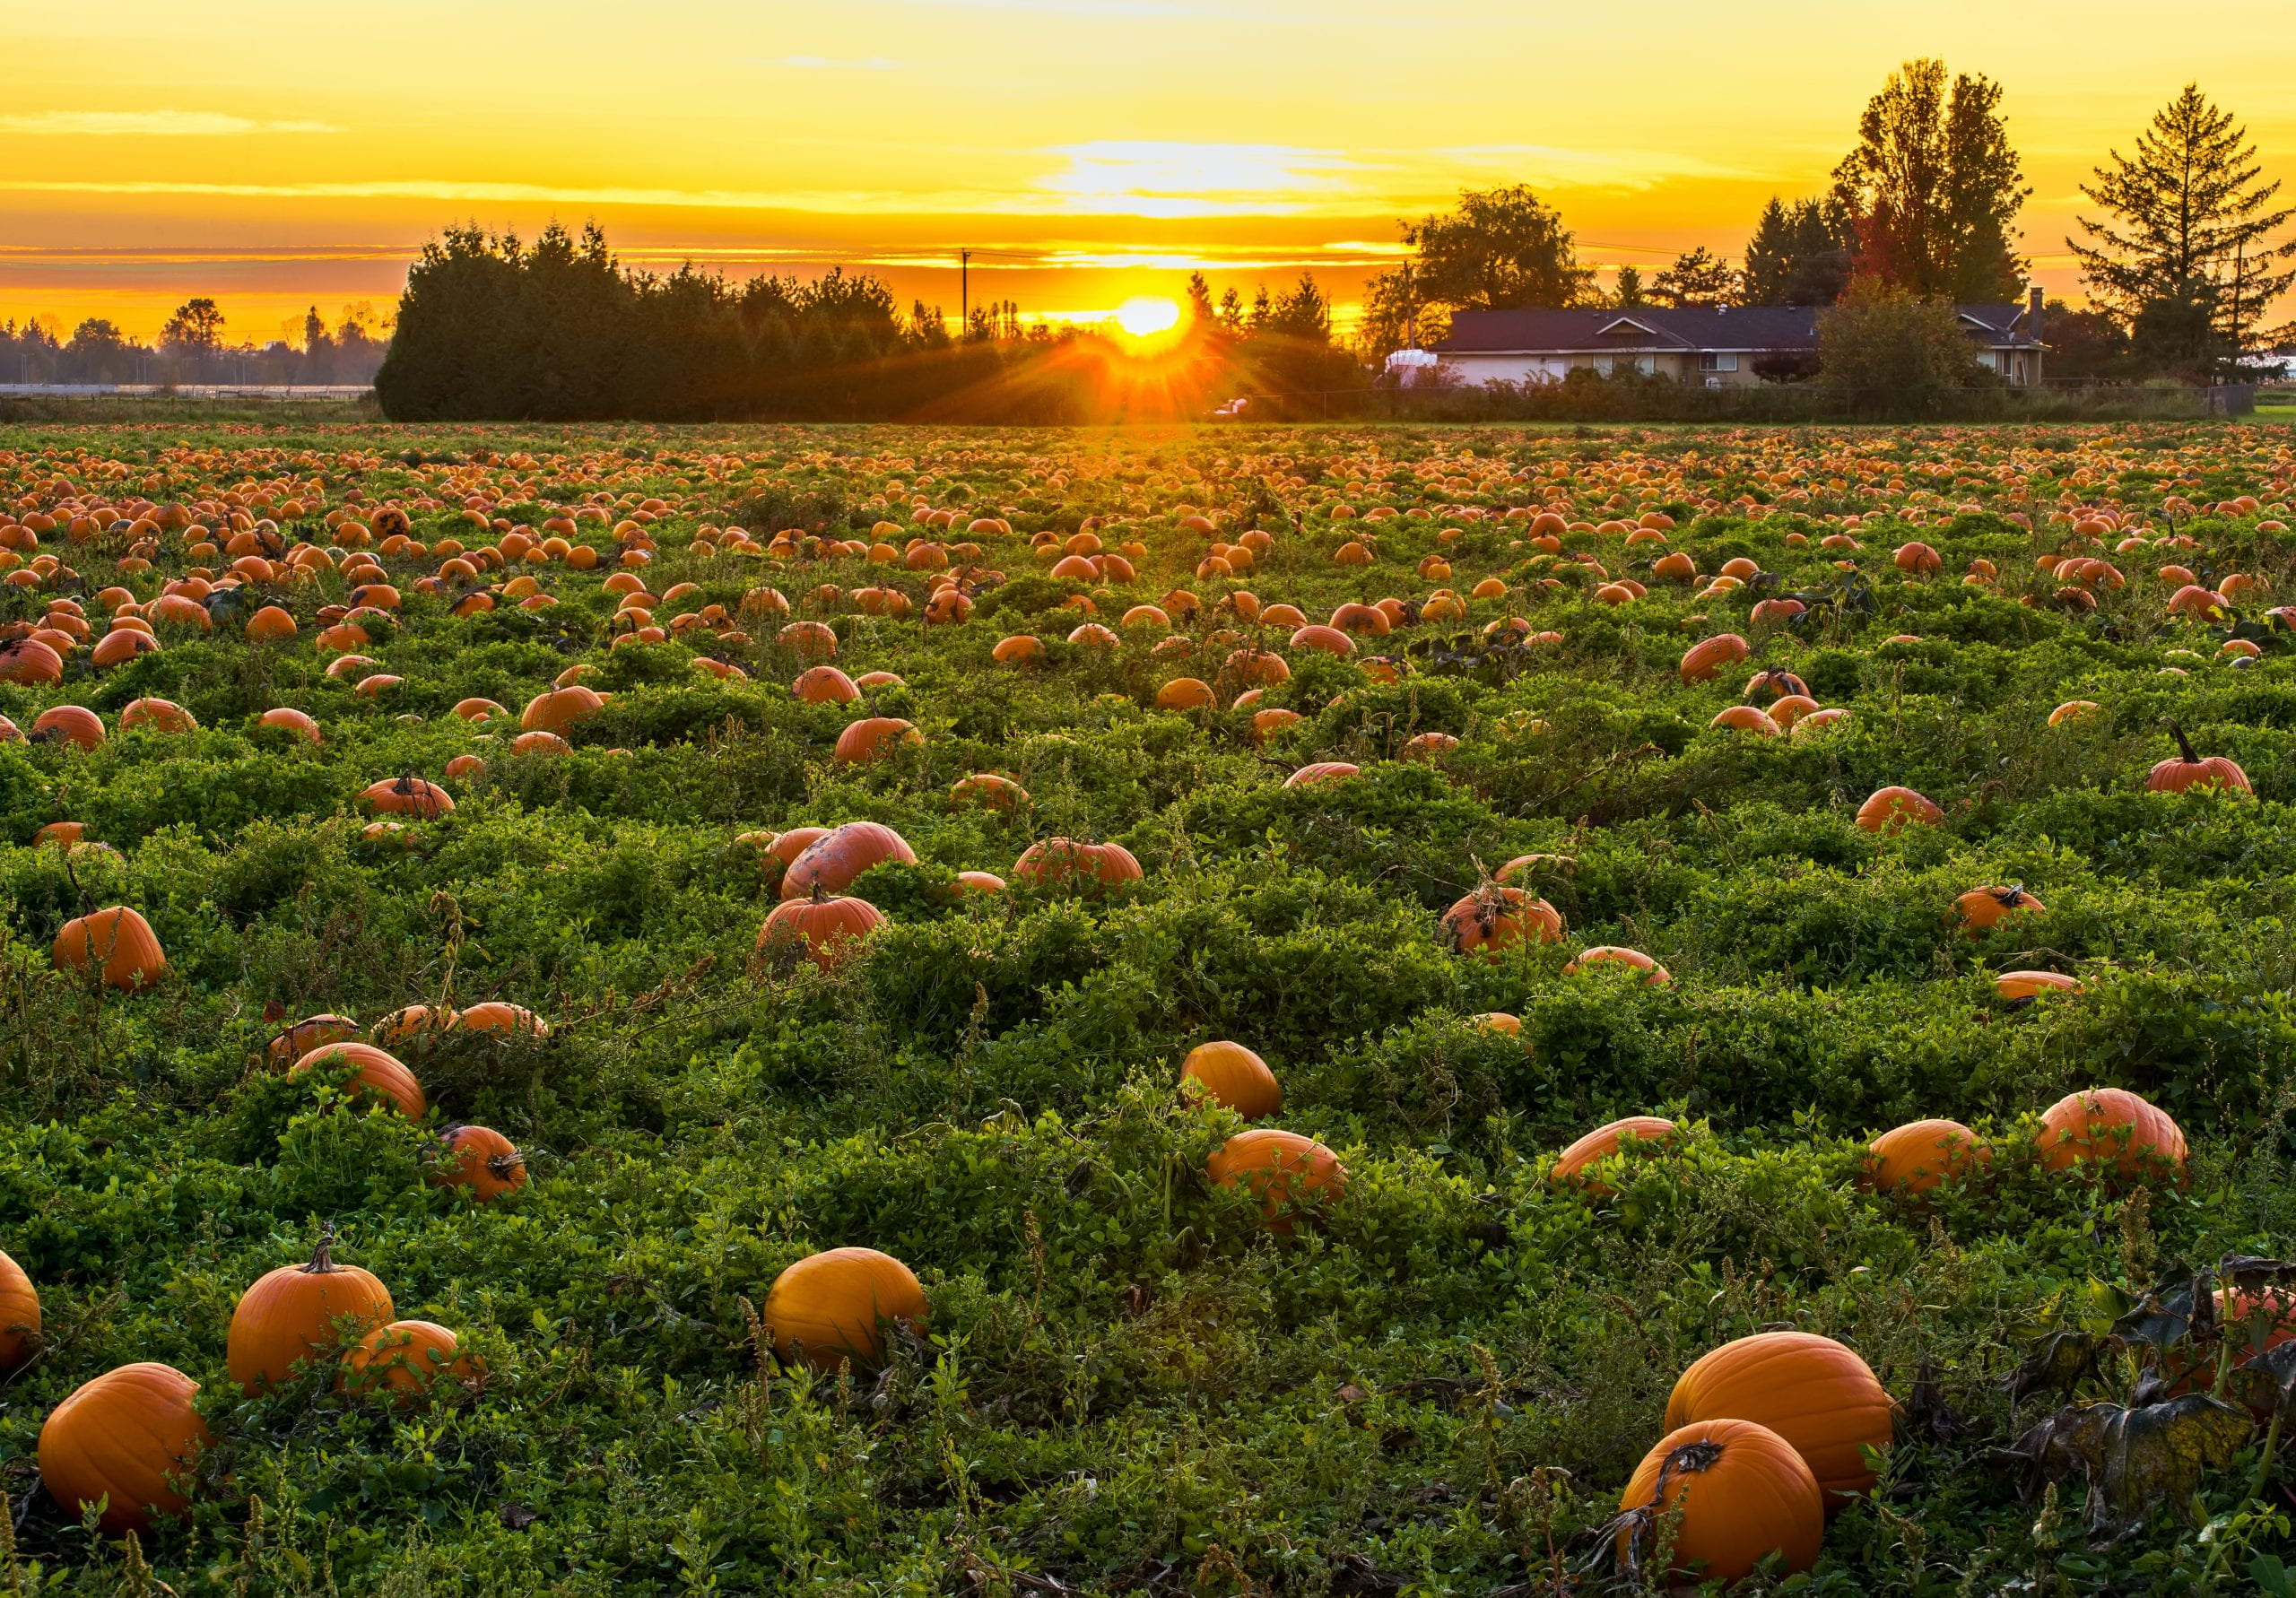 Pumpkins in a field.